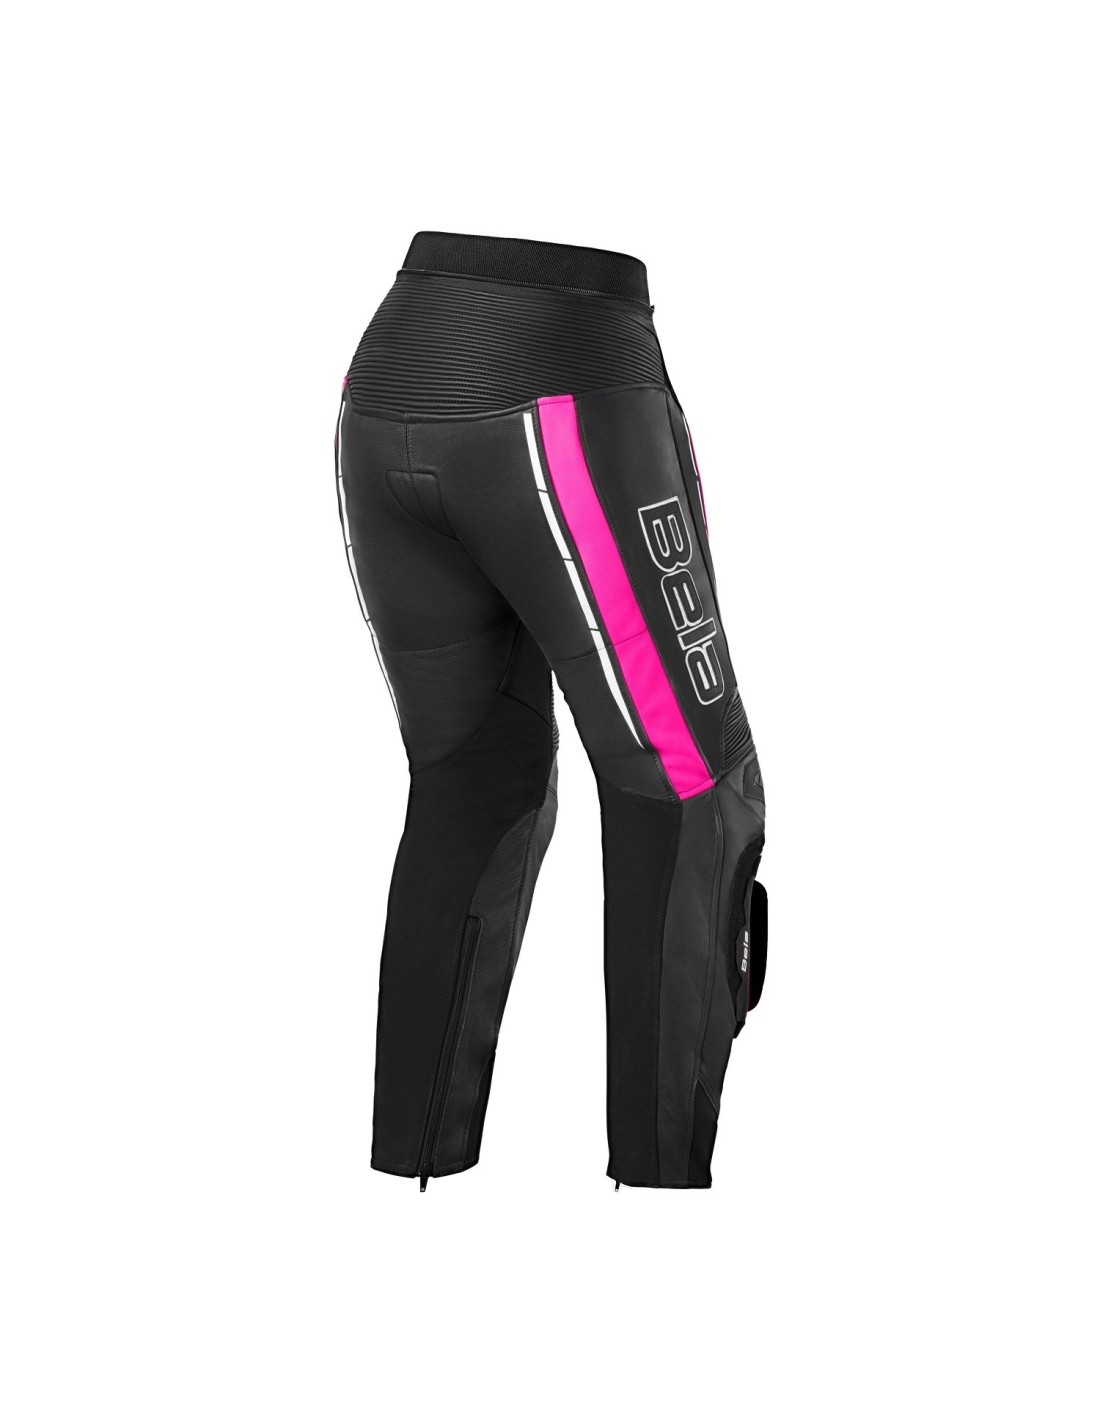 Pantalon de moto pour femme taille normale imperméable/protection certifiée CE Tour de taille 34 Longueur 30 noir et rose UK14 